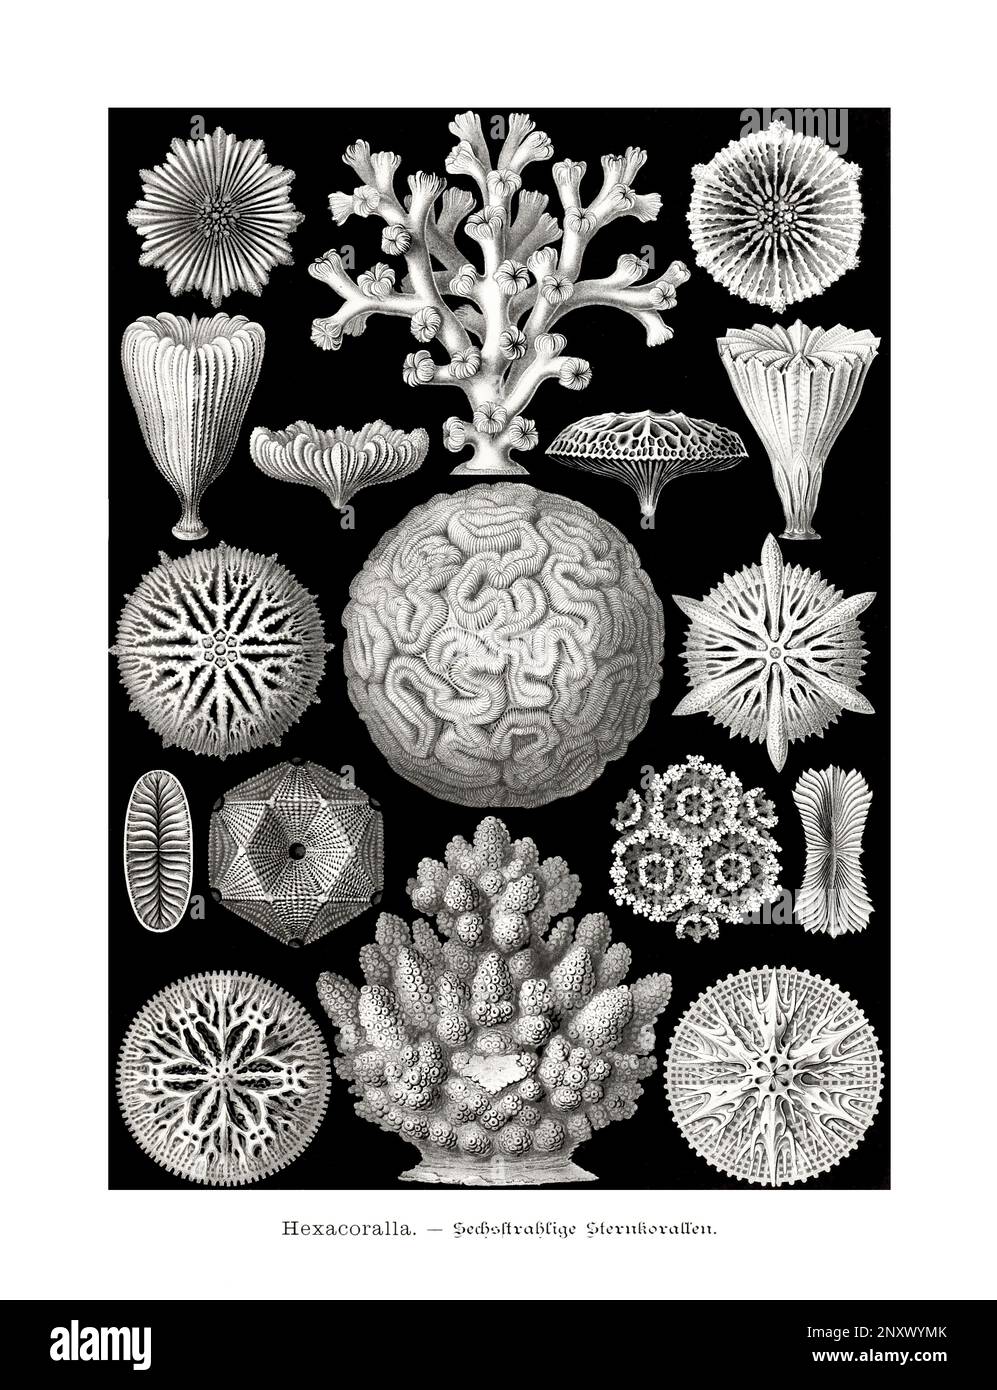 ERNST HAECKEL ART - Hexacoralla, Korallen - 19. Jahrhundert - Antike zoologische Illustration - Illustrationen des Buches : "Kunstformen in der Natur" Stockfoto